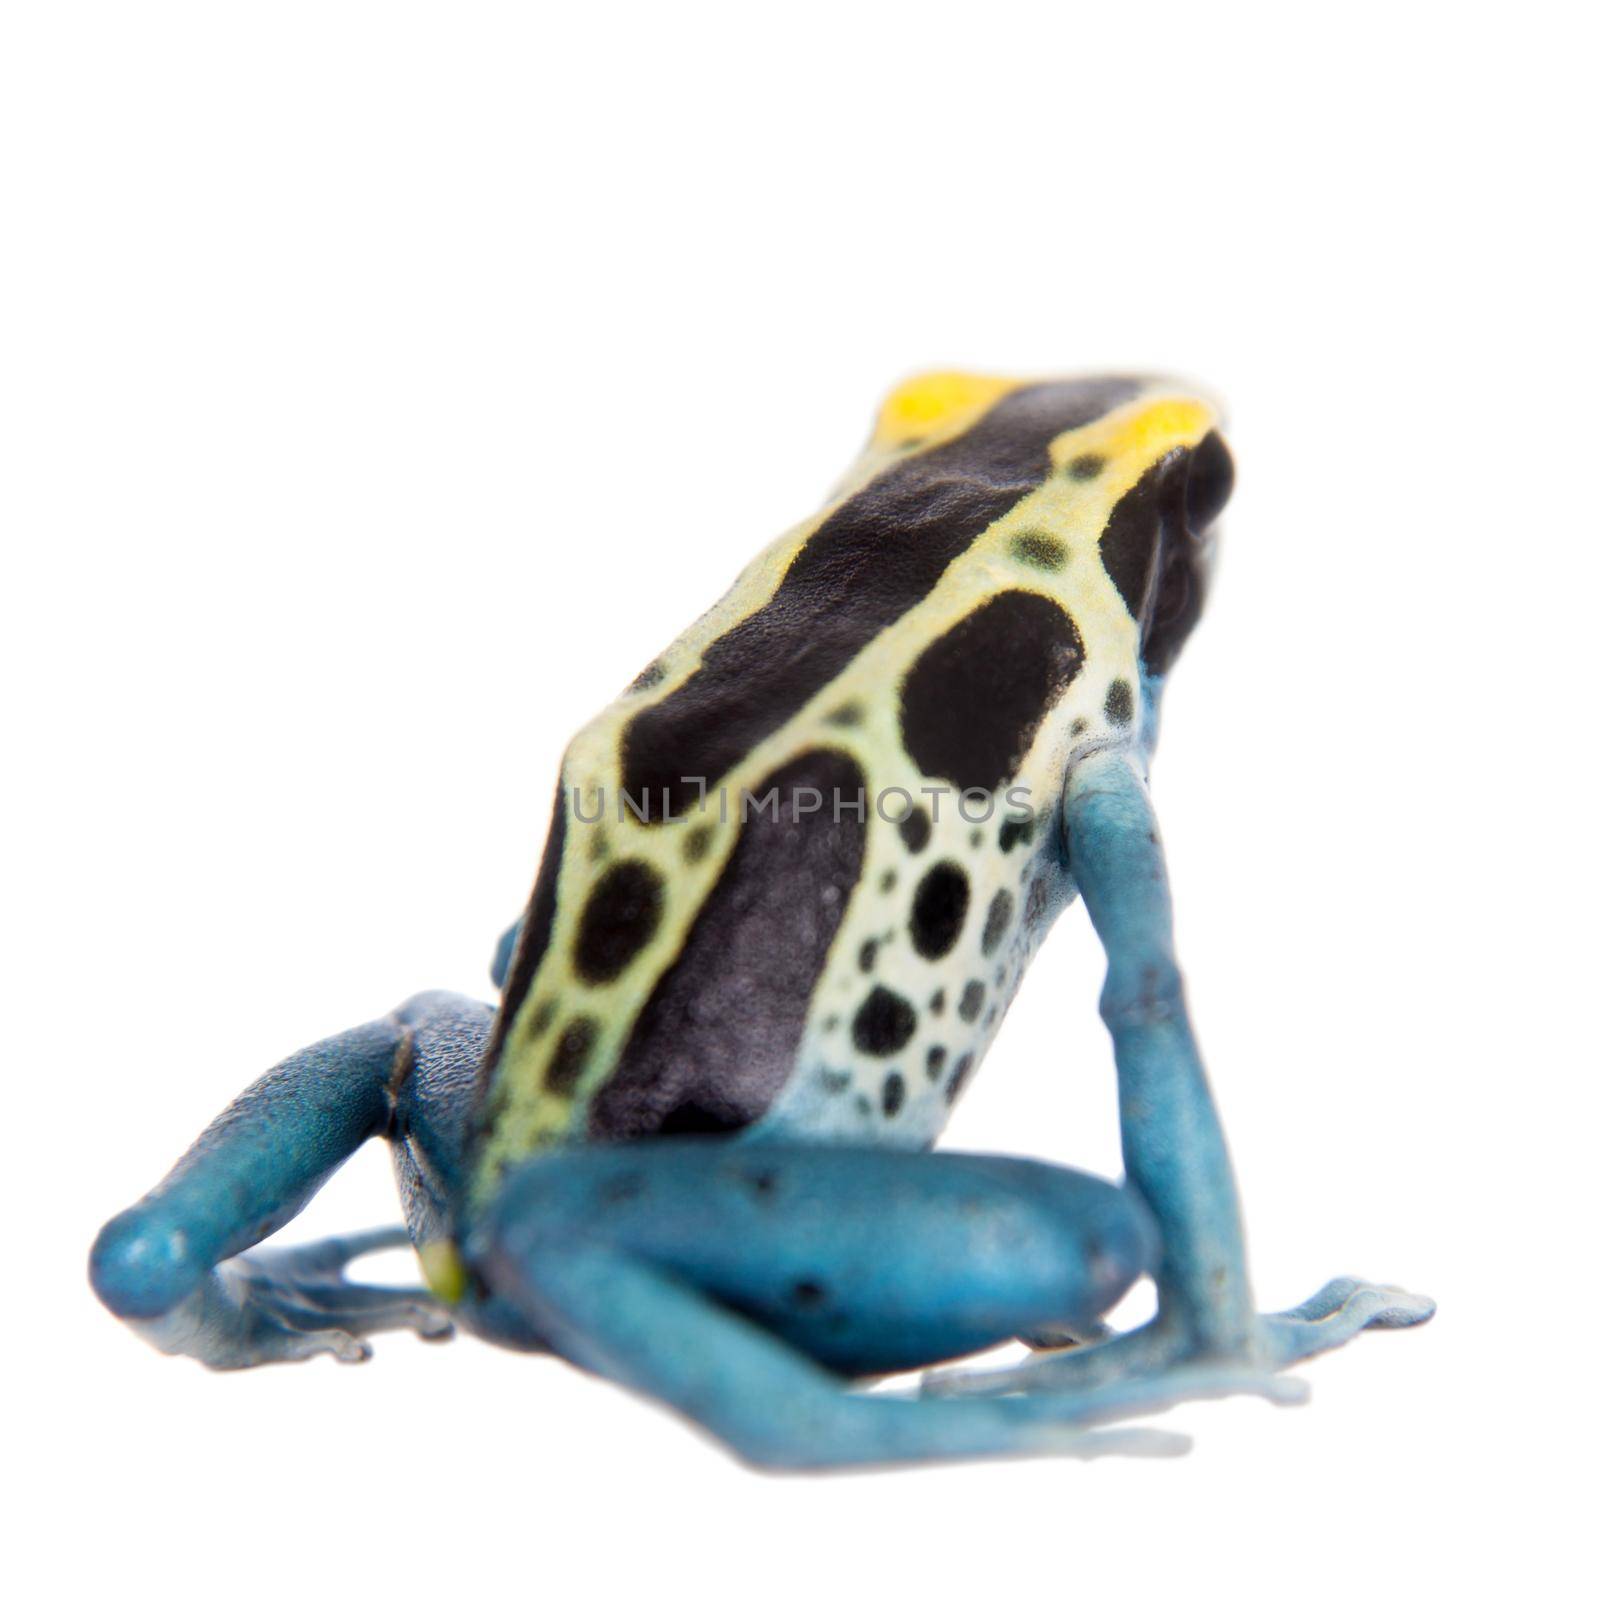 Patricia Dyeing Poison Dart Frog, Dendrobates tinctorius, on white by RosaJay